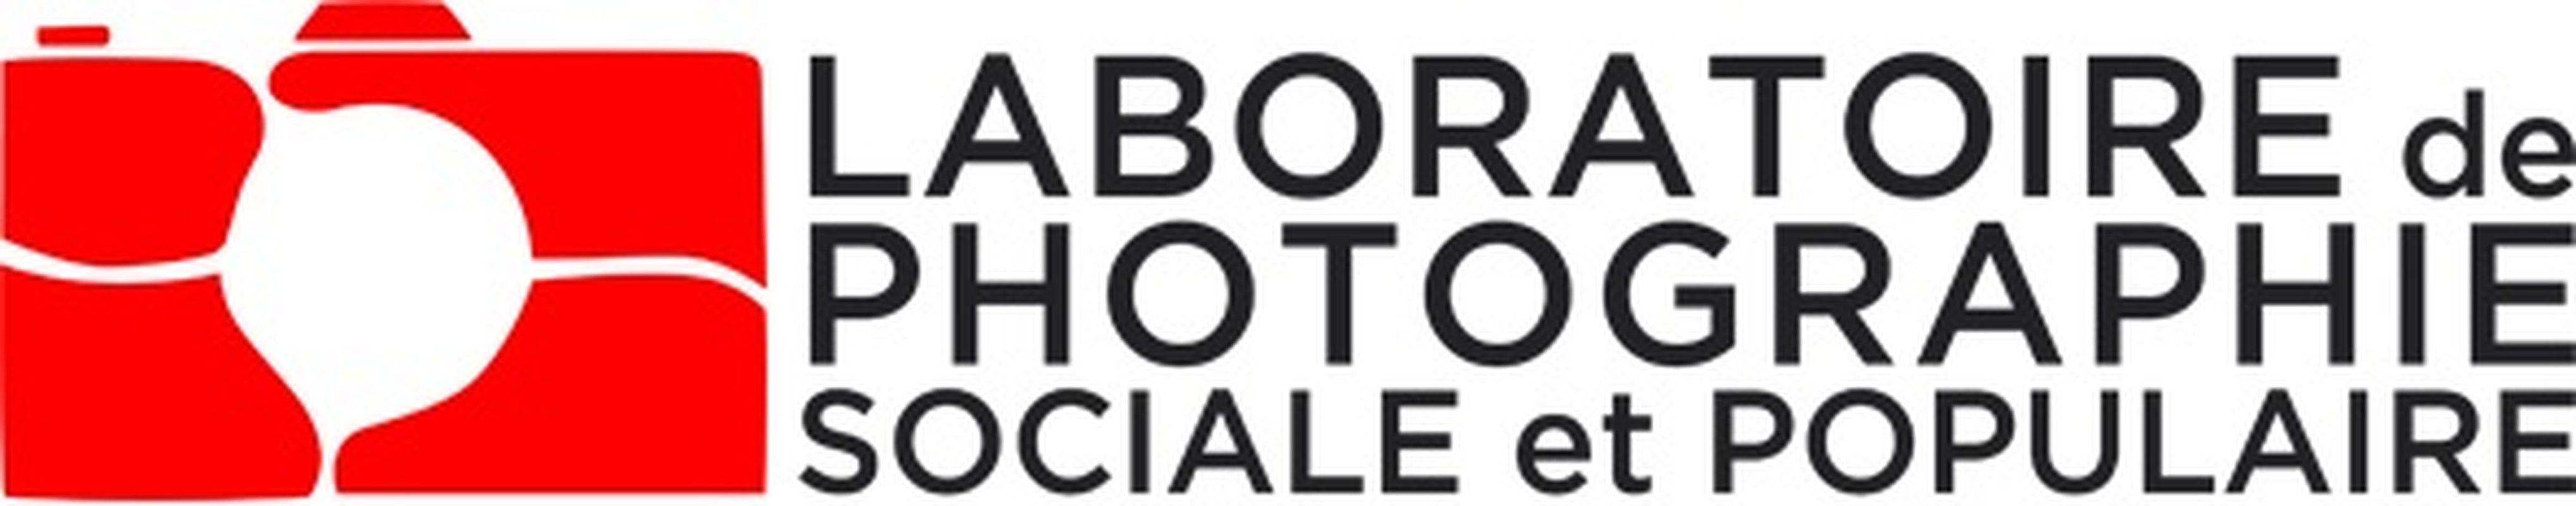 Laboratoire de photographie populaire et sociale